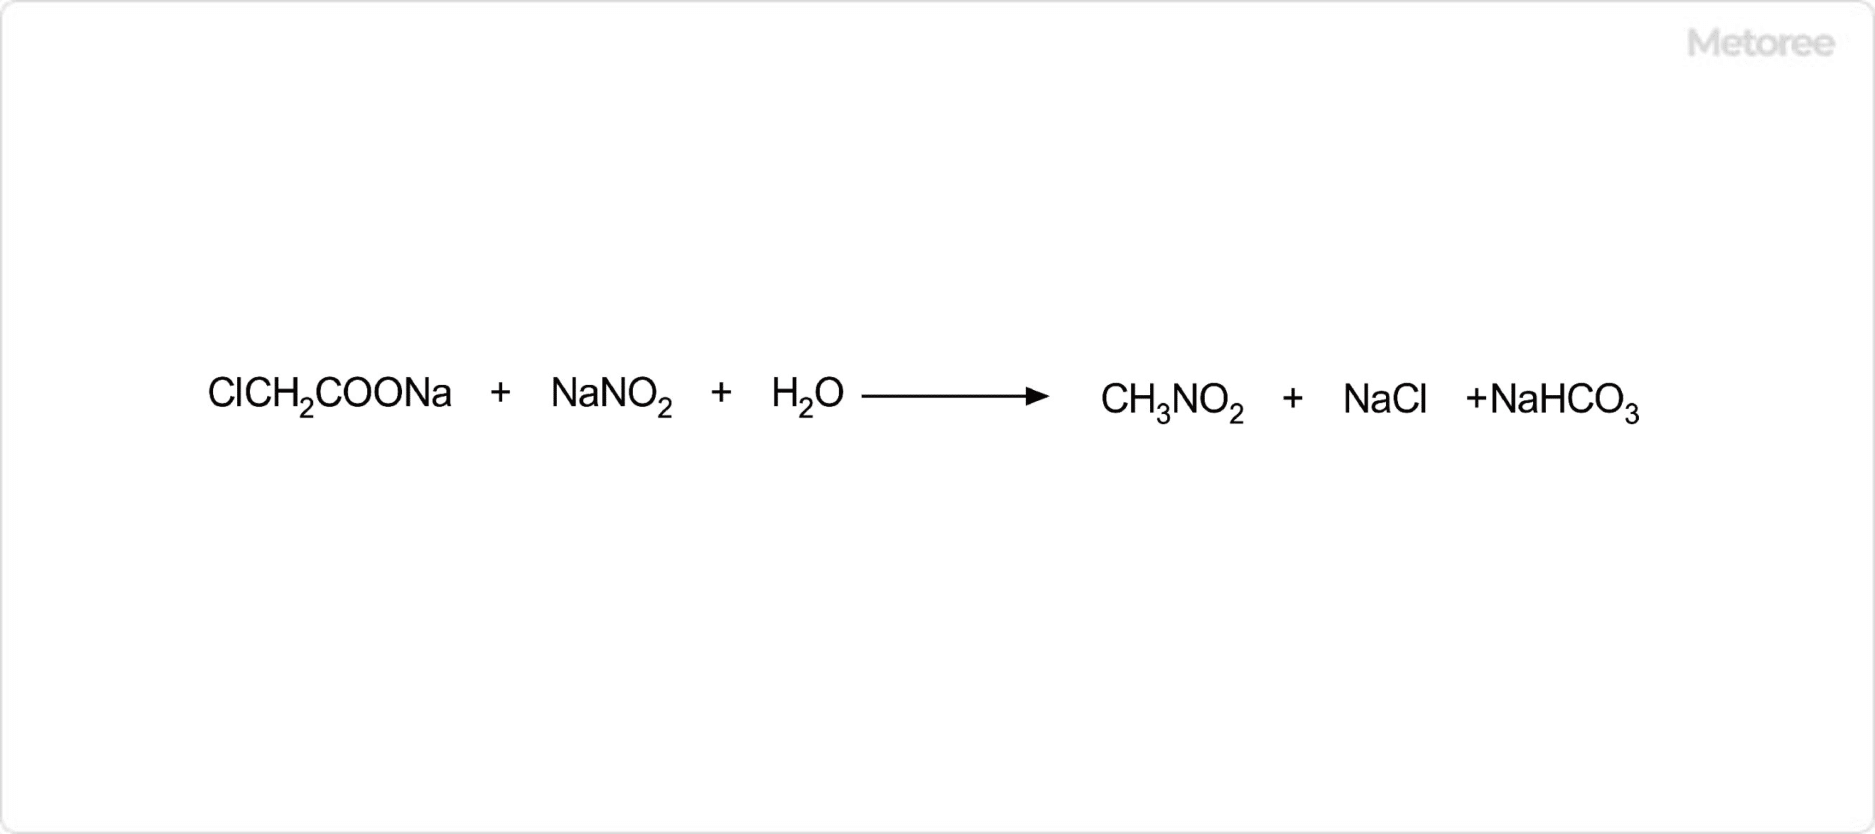 ニトロメタンの合成